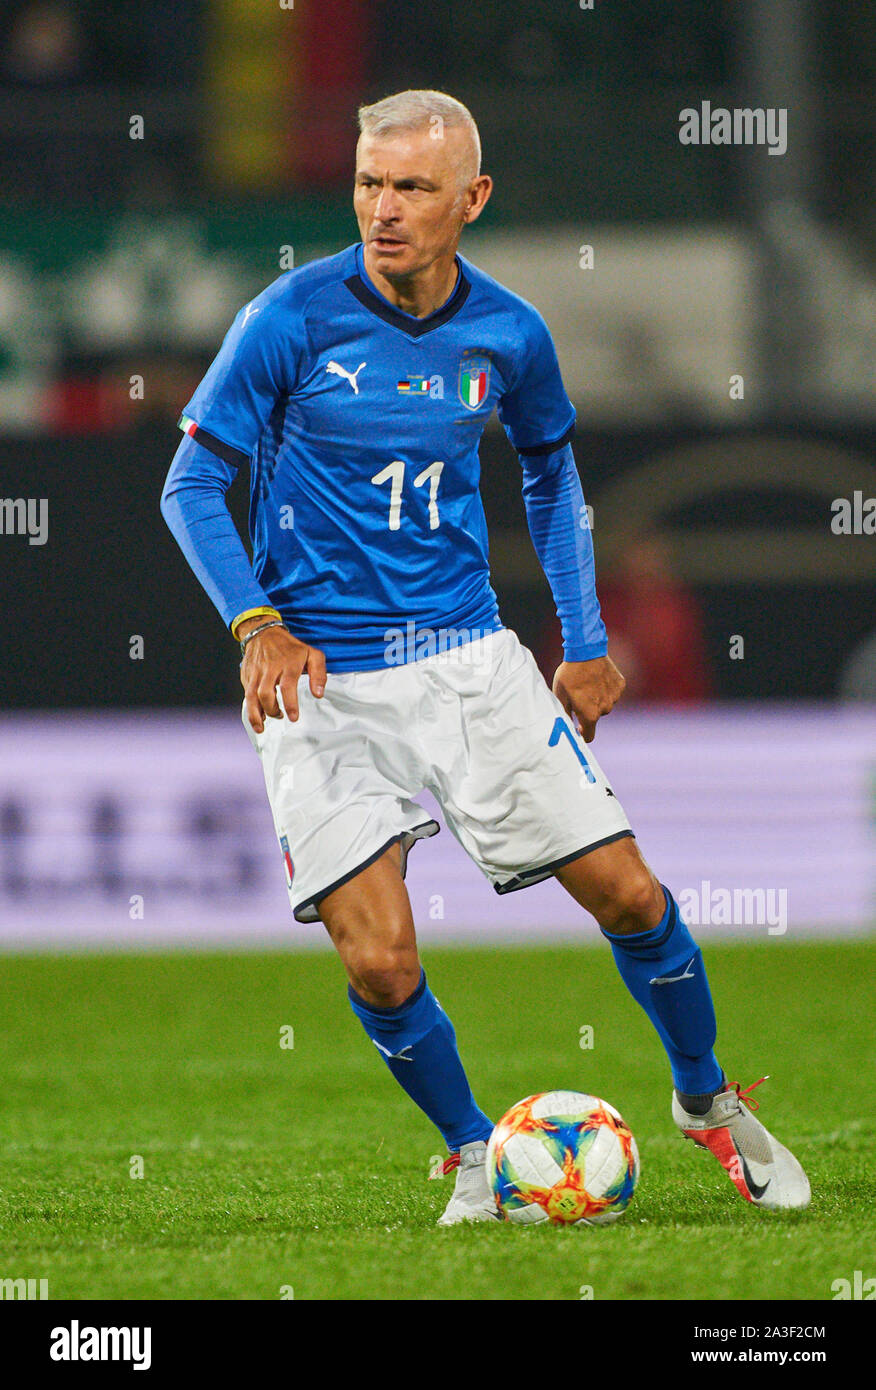 Fabrizio Ravanelli - Player profile